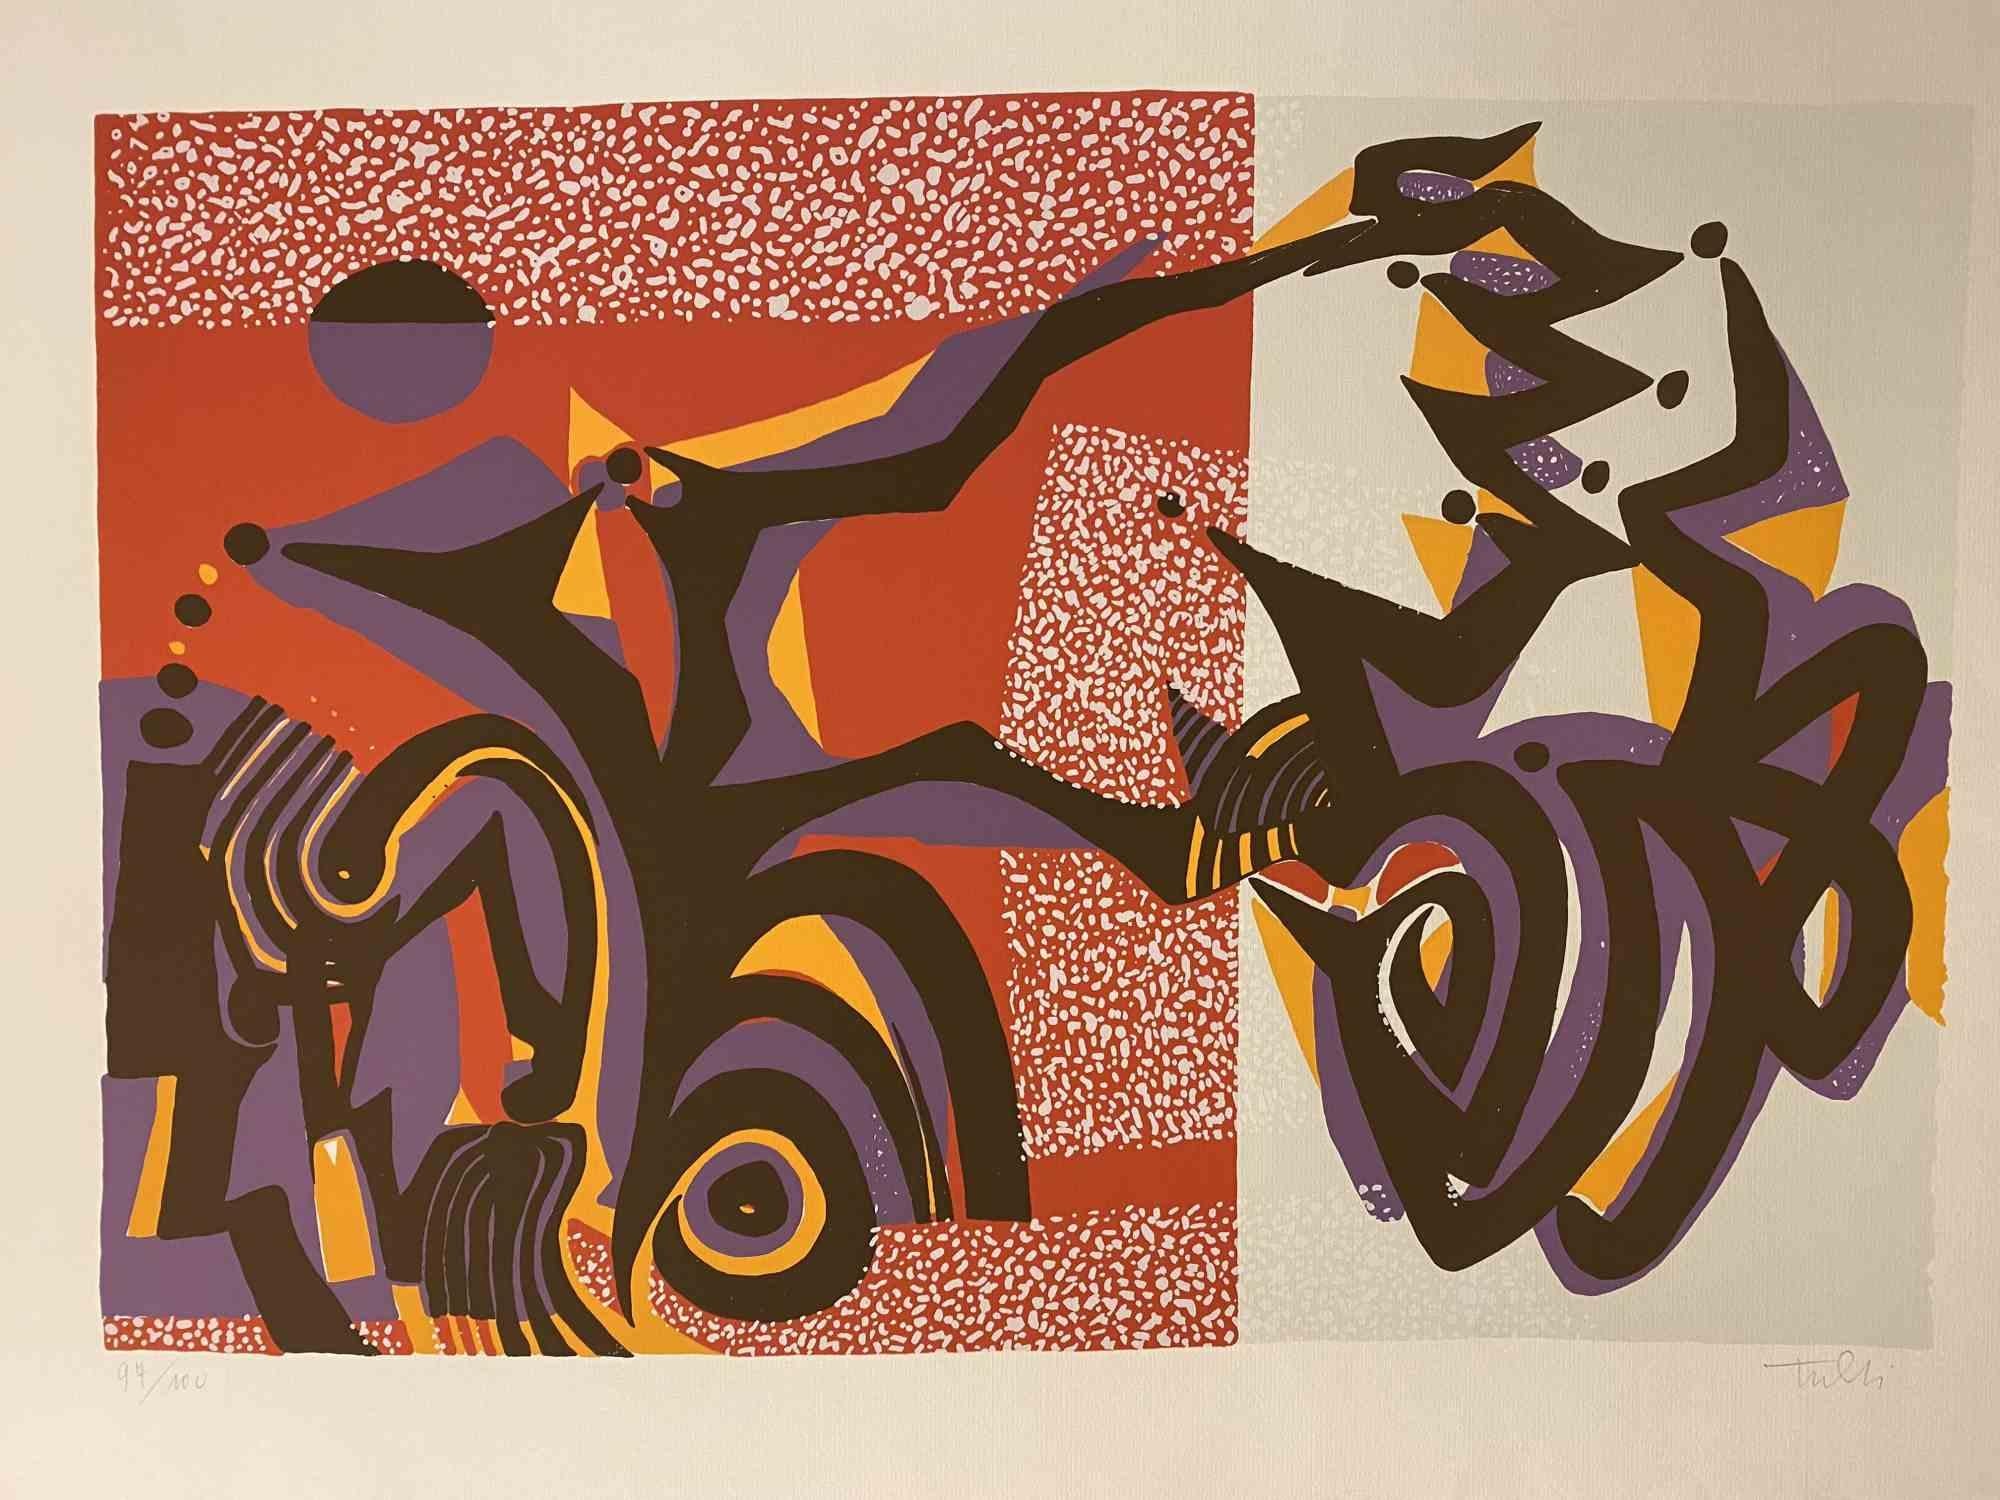 Carnivalesque Composition ist ein farbiger Siebdruck auf Papier, der in den 1970er Jahren von dem italienischen Künstler Wladimiro Tulli realisiert wurde.

Rechts unten handsigniert.

Nummerierte Auflage von 97/100.

Ein schönes Kunstwerk, das eine